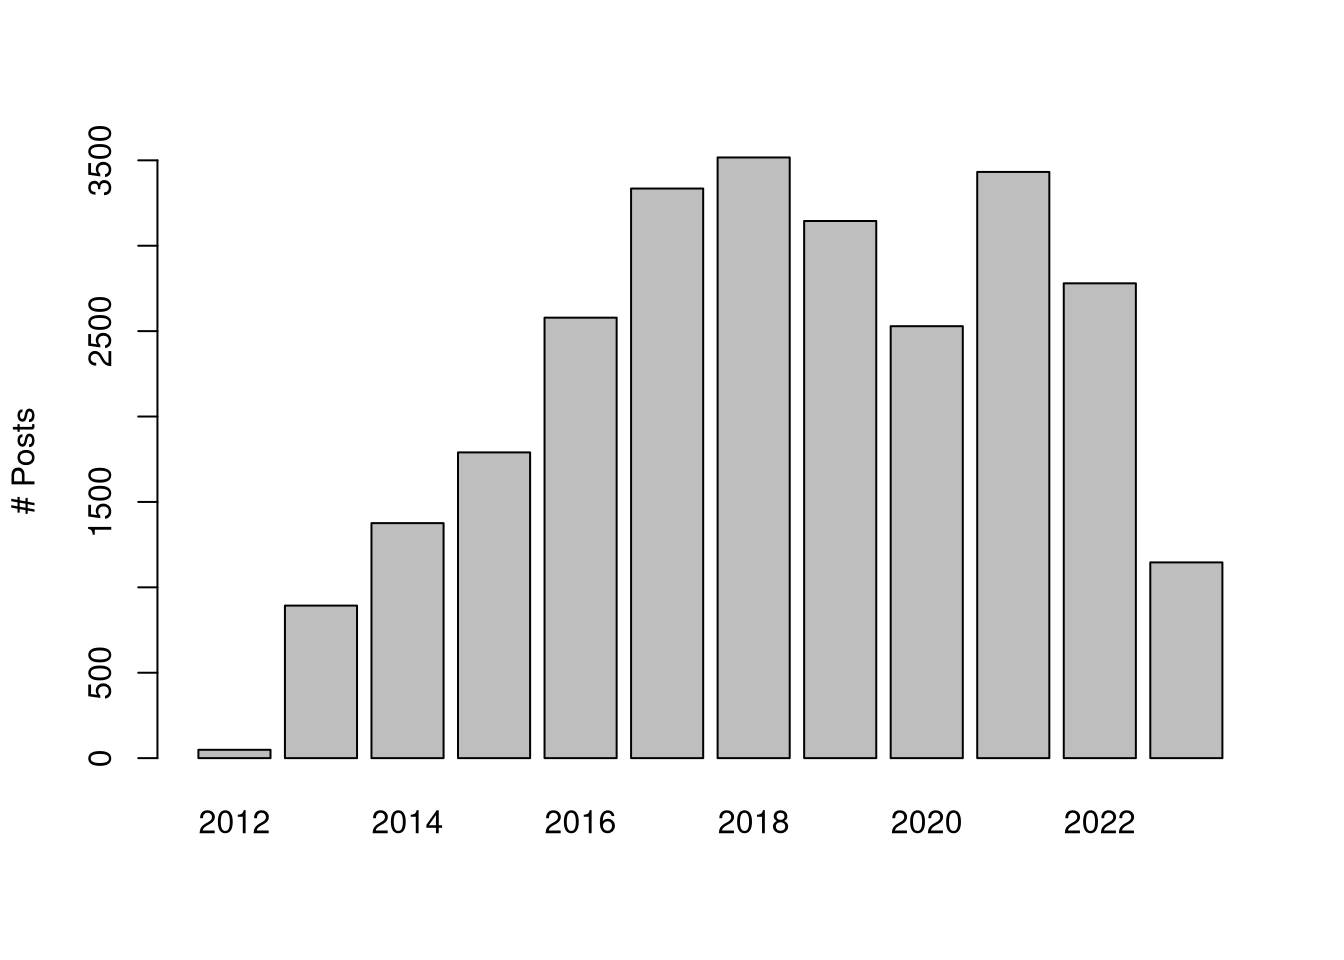 Distribution of job posts over time.